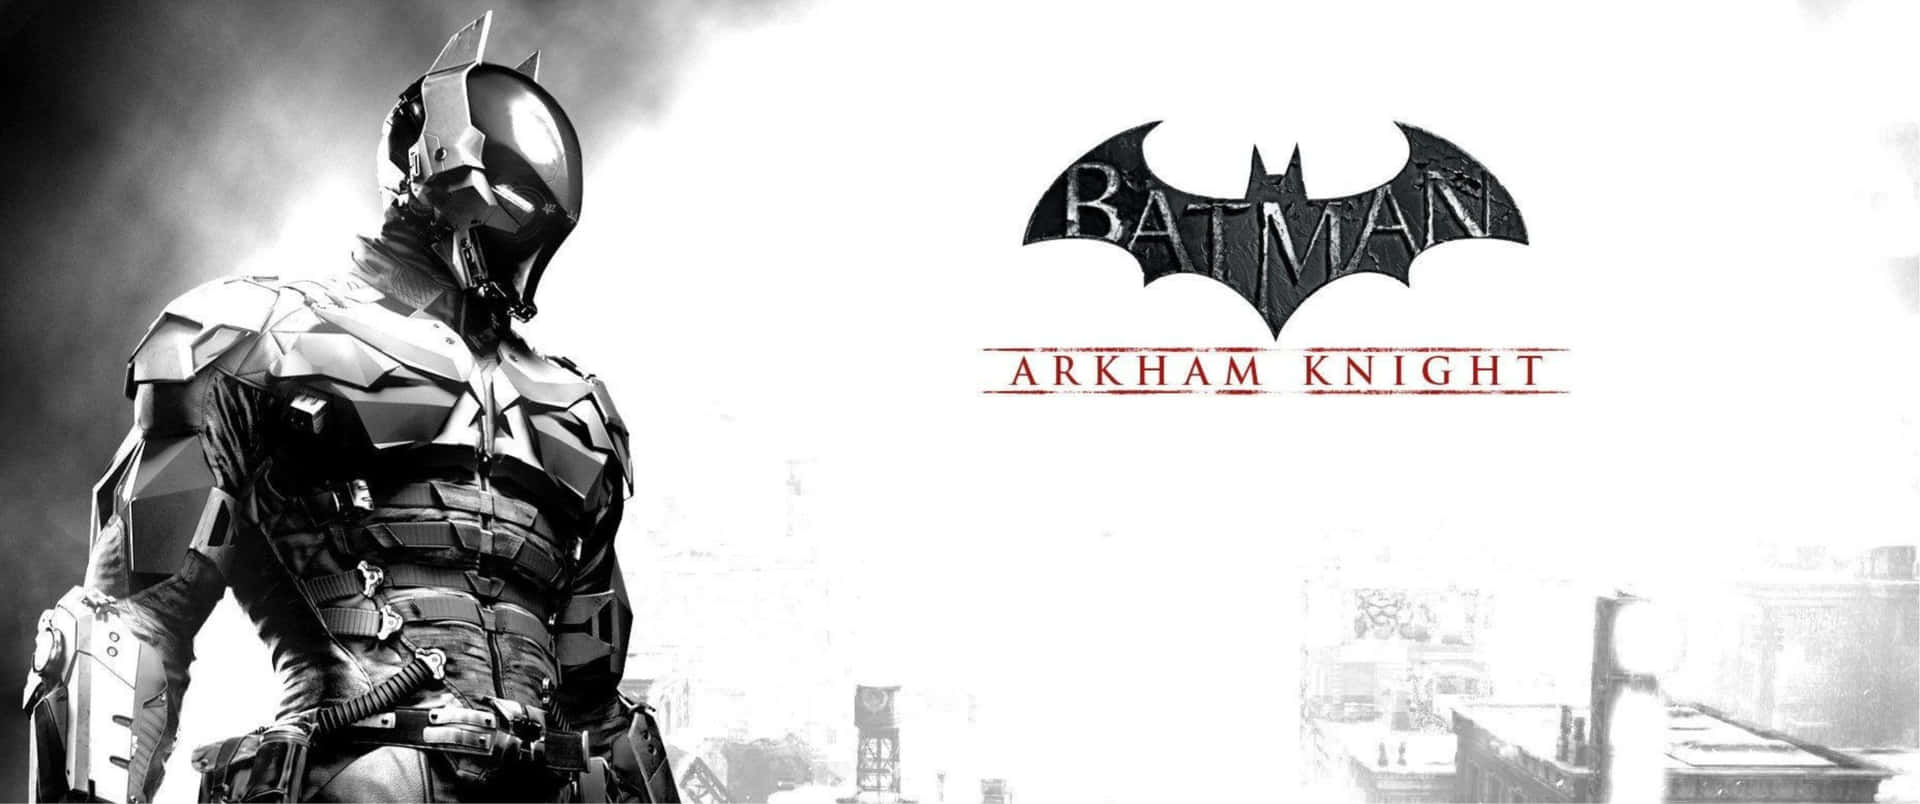 Batman descends into Arkham City in pursuit of the Joker.